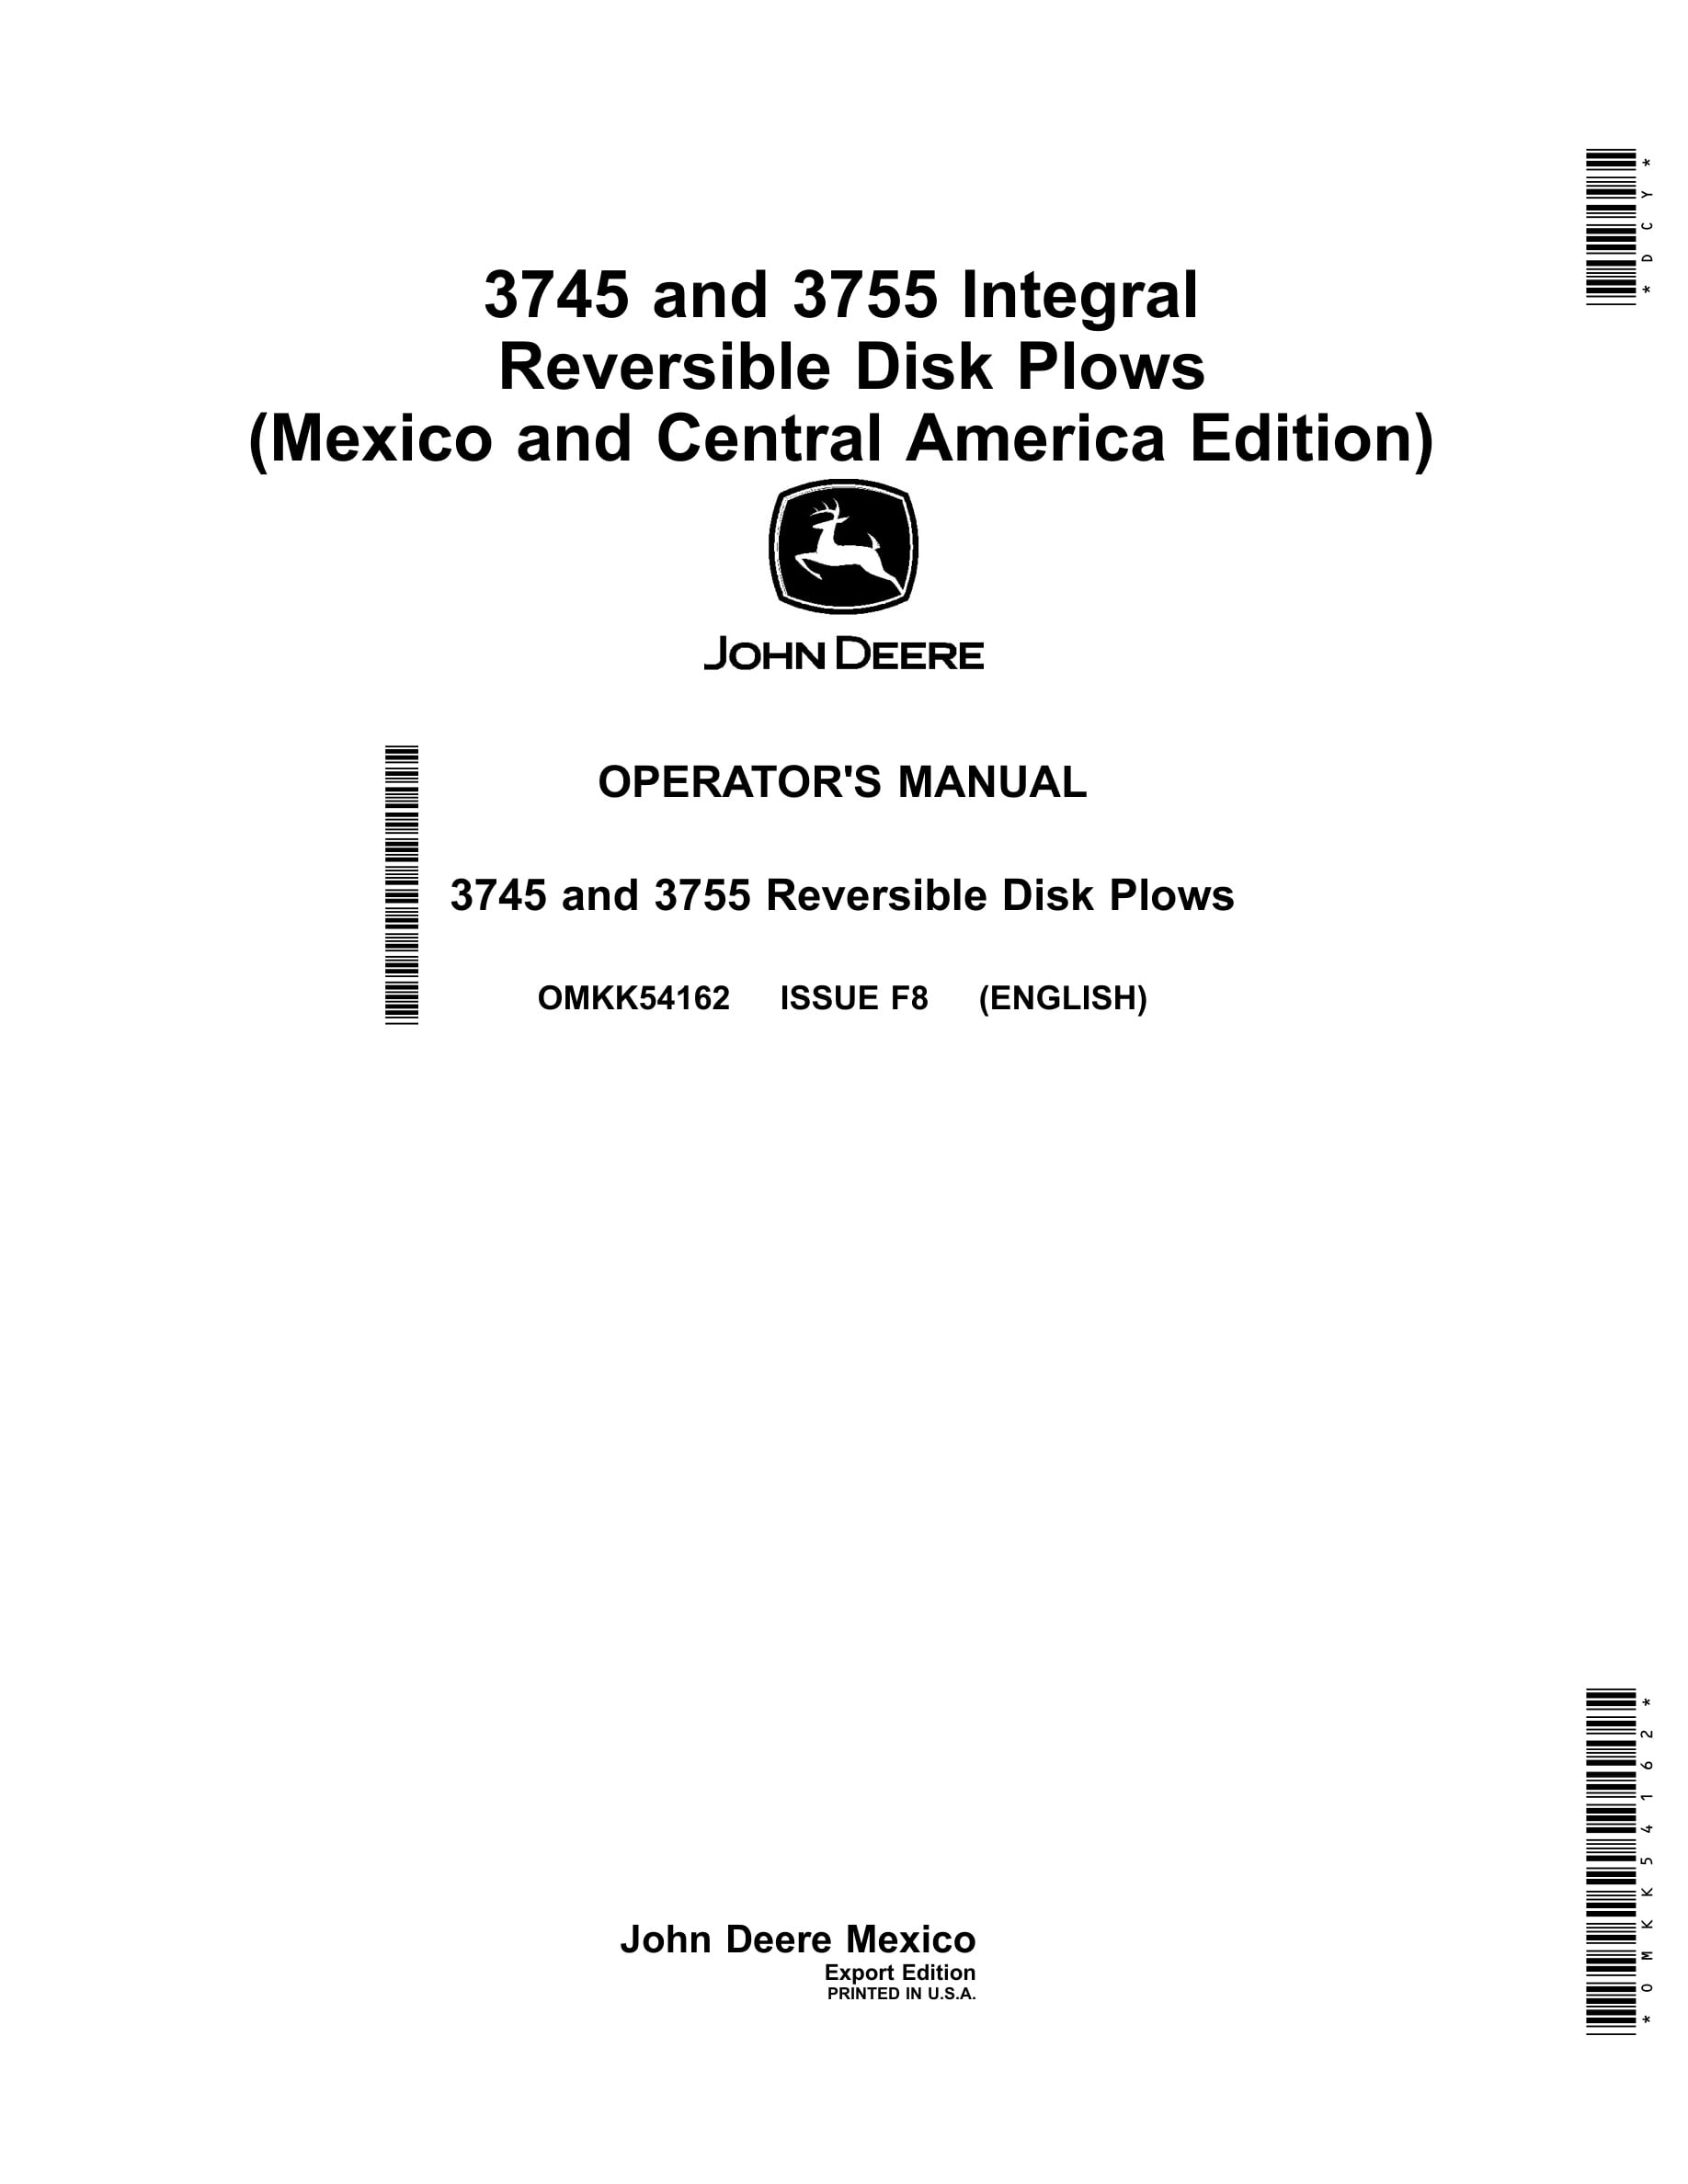 John Deere 3745 and 3755 Reversible Disk Plows Operator Manual OMKK54162-1